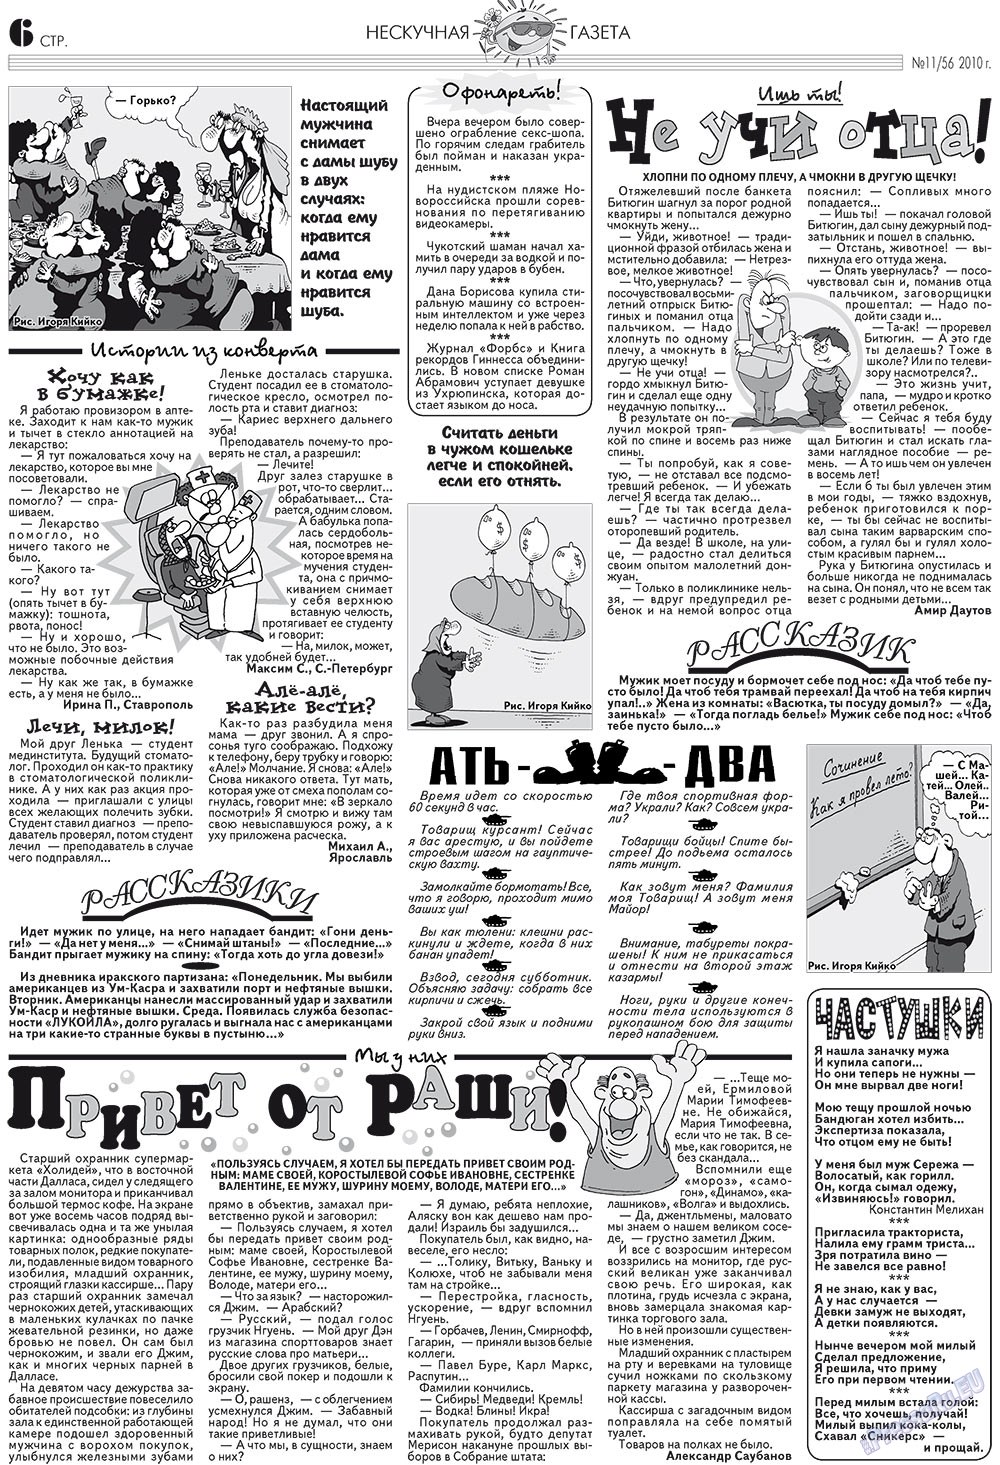 Нескучная газета, журнал. 2010 №11 стр.6